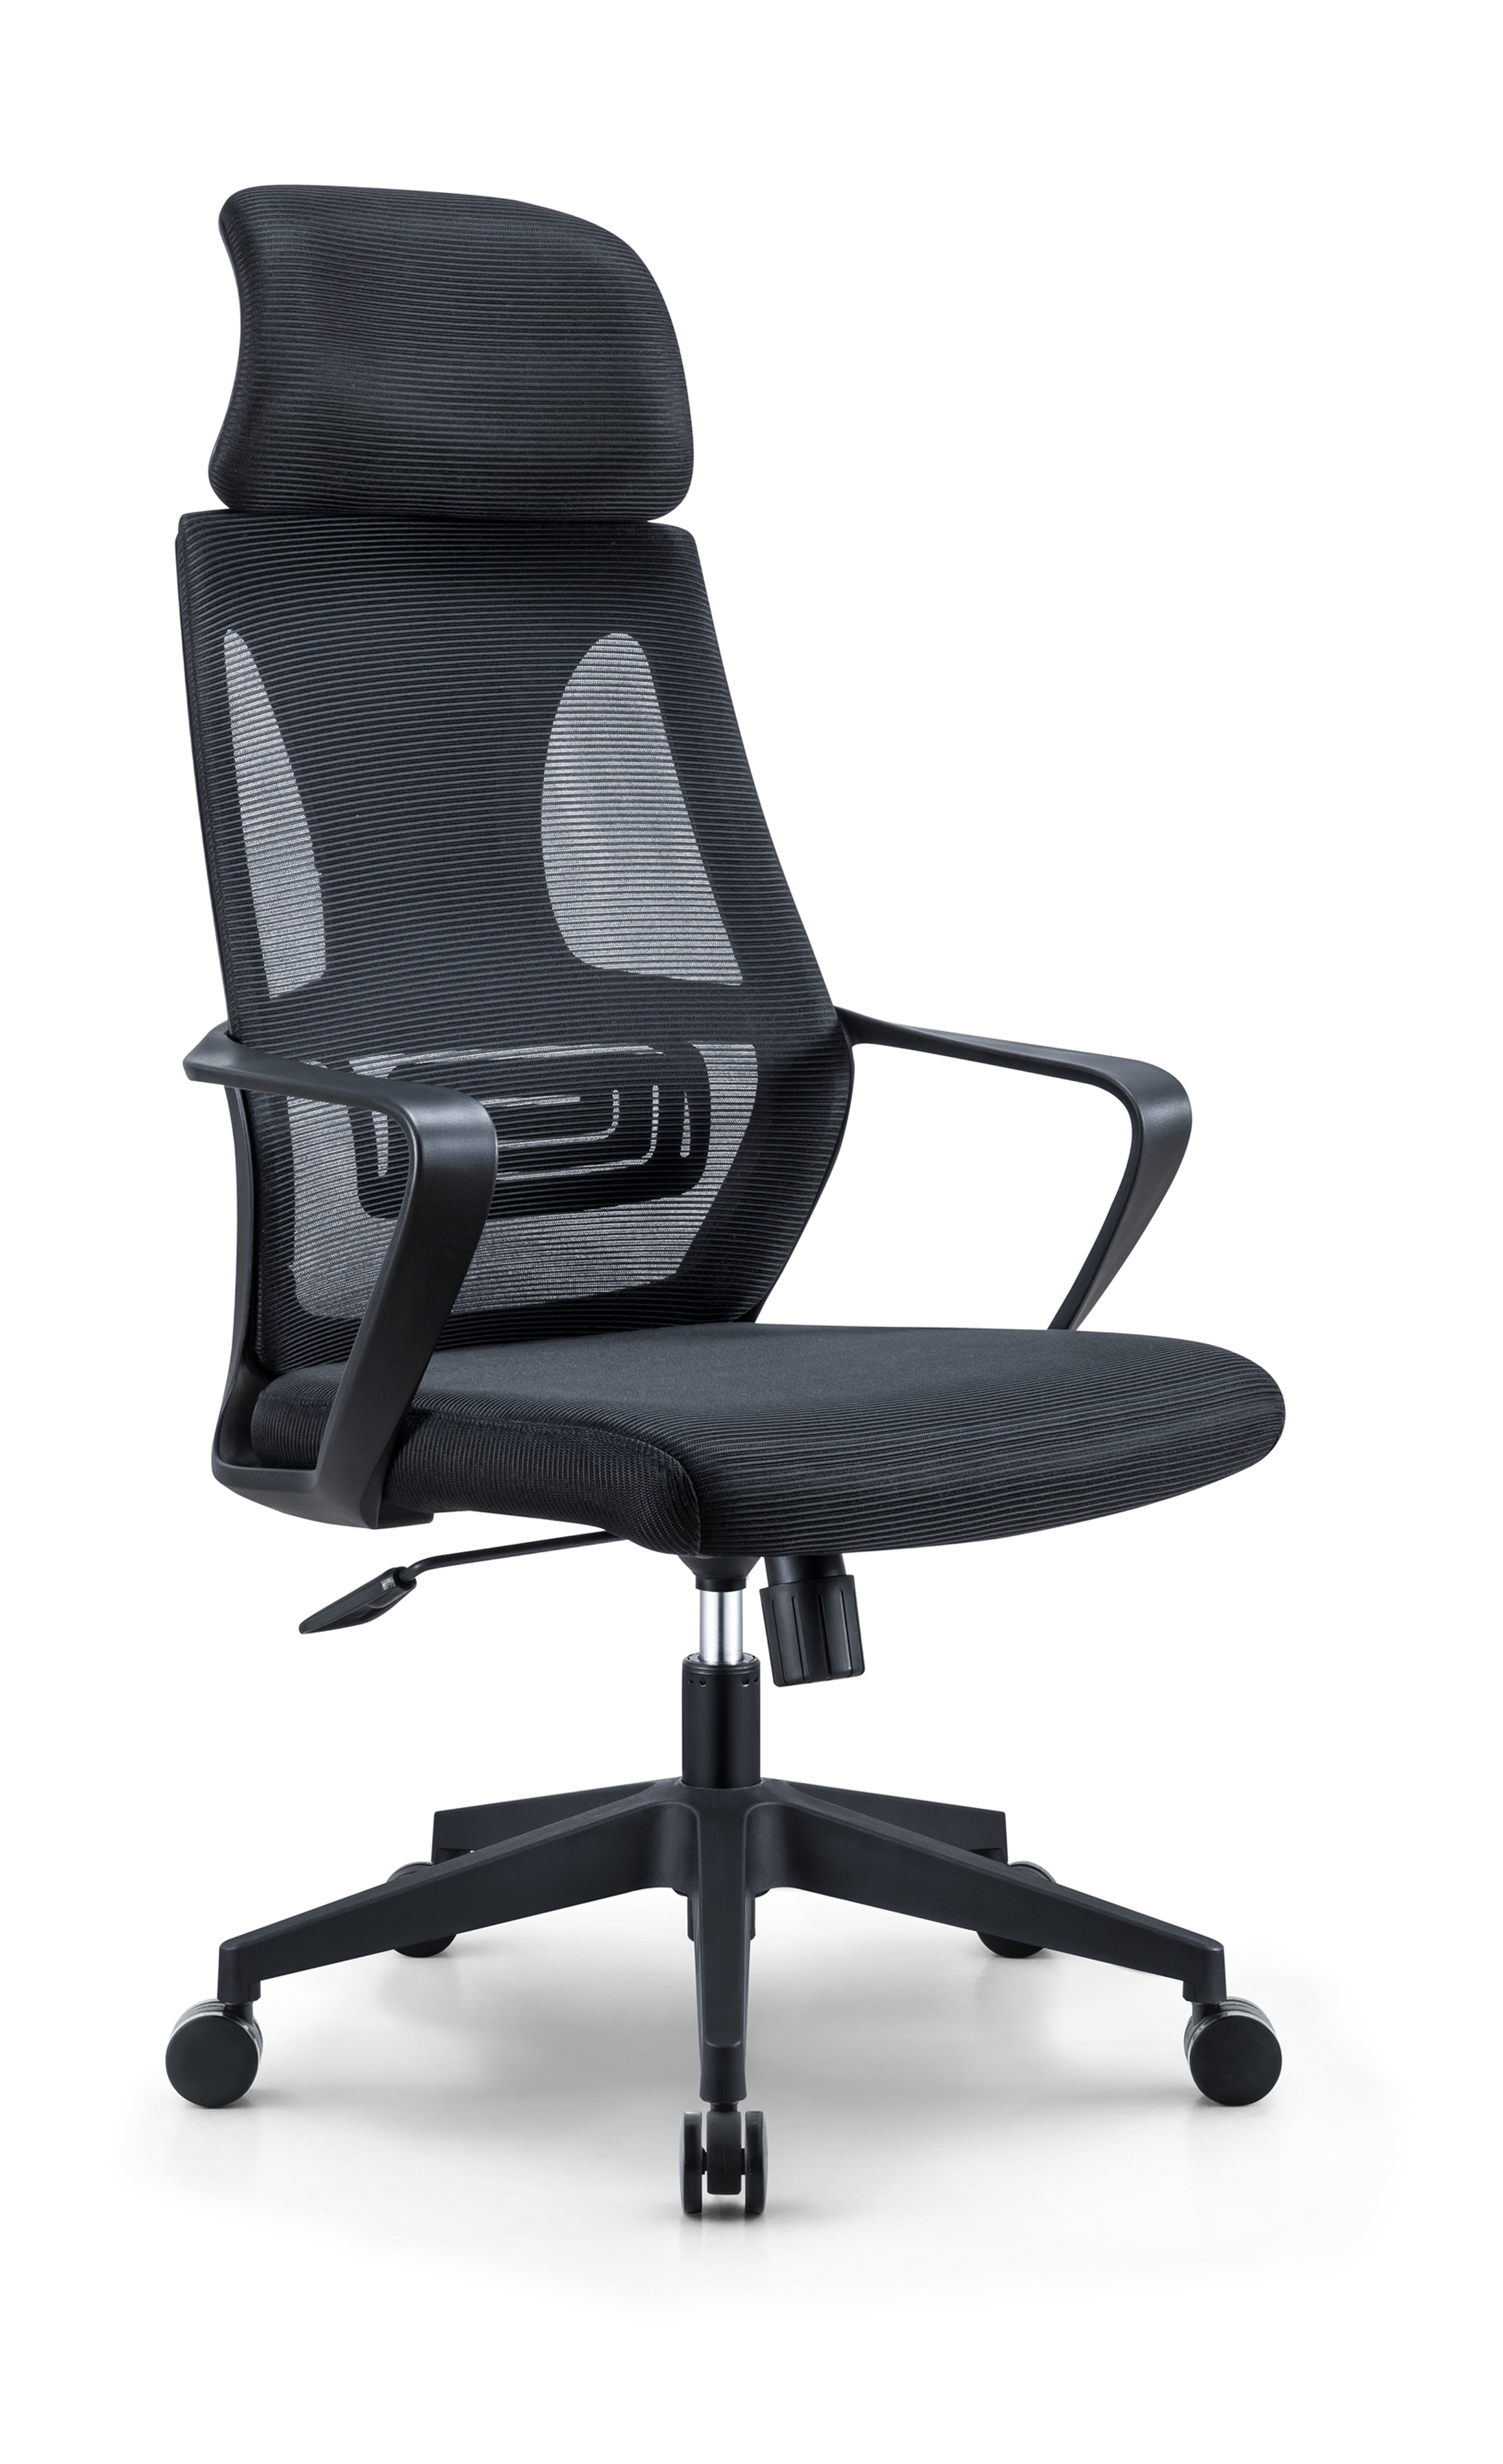 Newcity 544A 热销现代高背网椅最优惠价格网椅可调节头枕网椅员工转椅办公家具供应商佛山中国